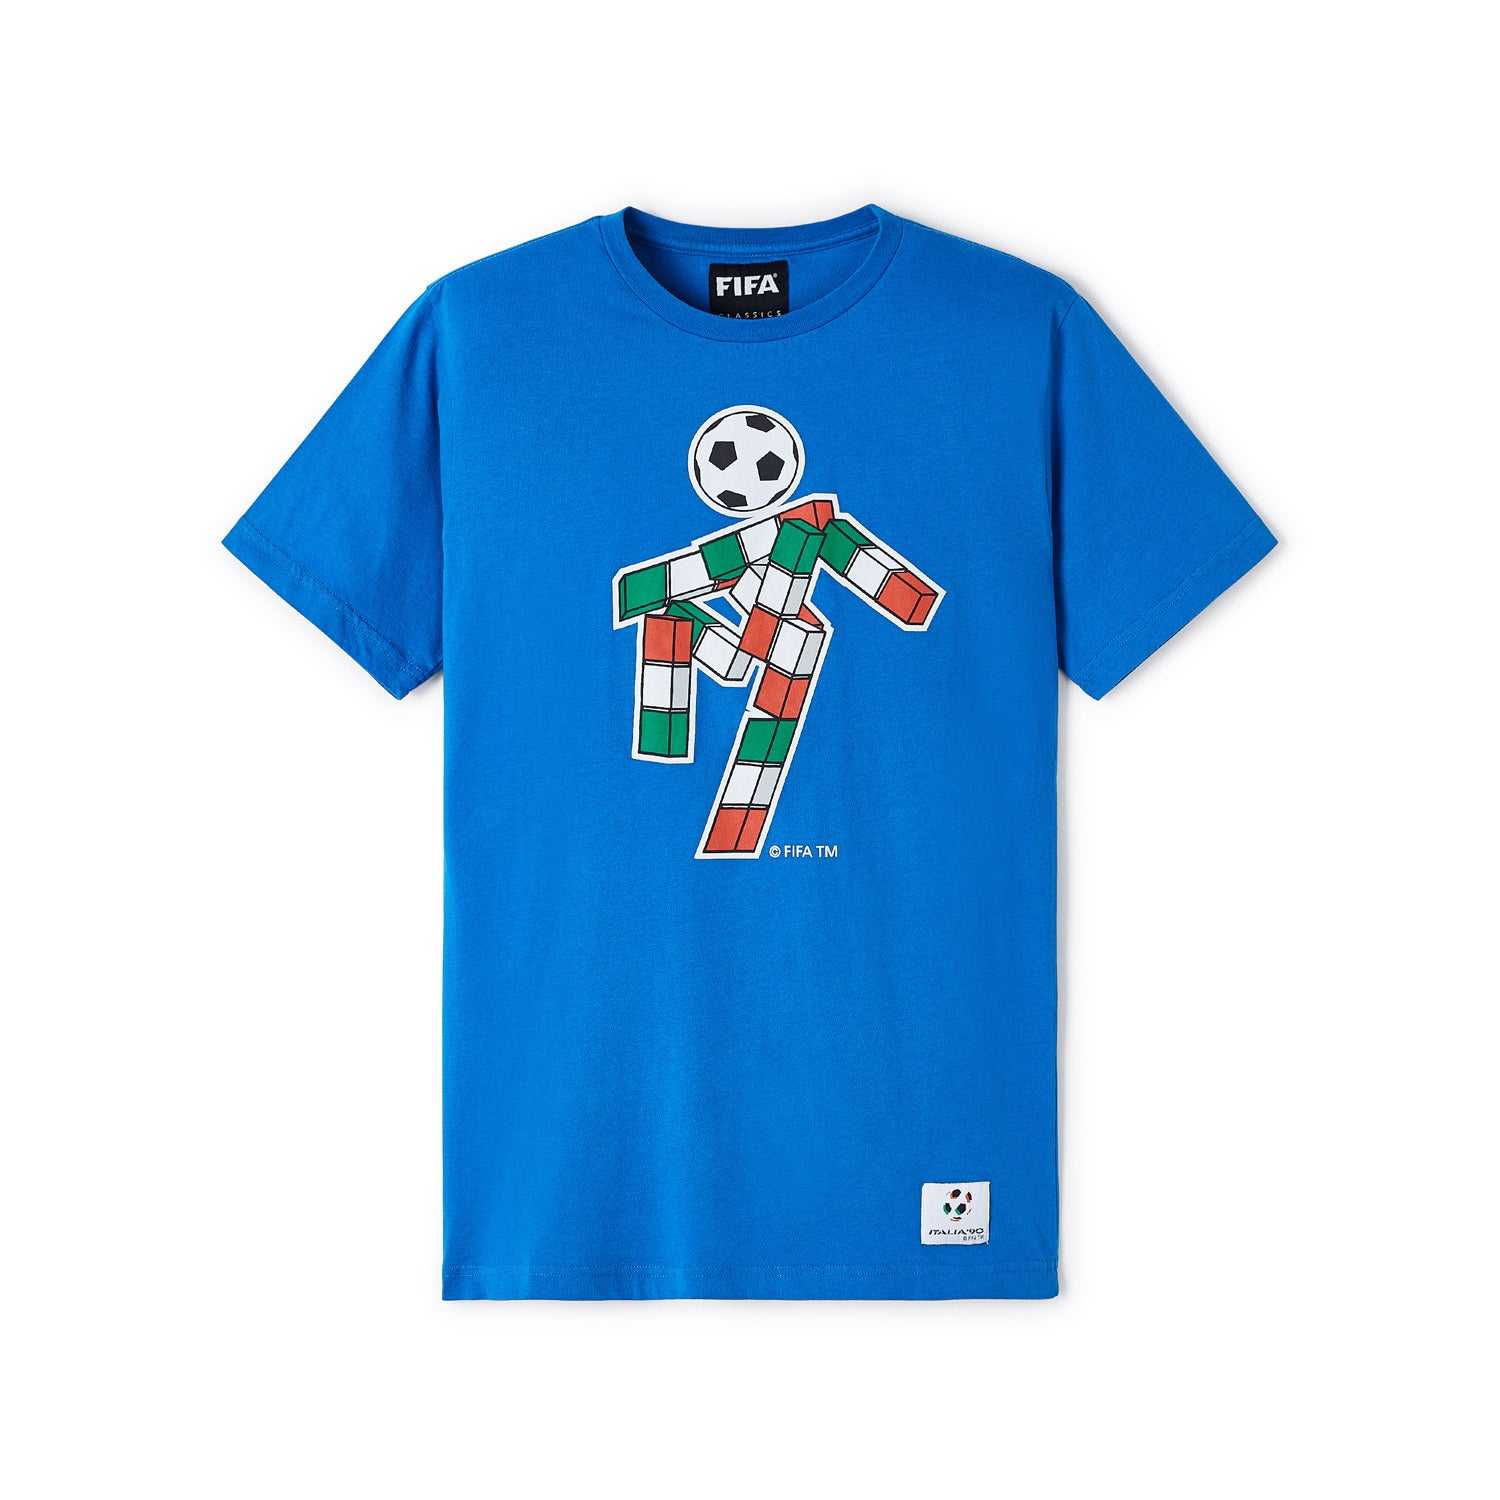 FIFA Classics 1990 World Cup Mascot Blue T-Shirt